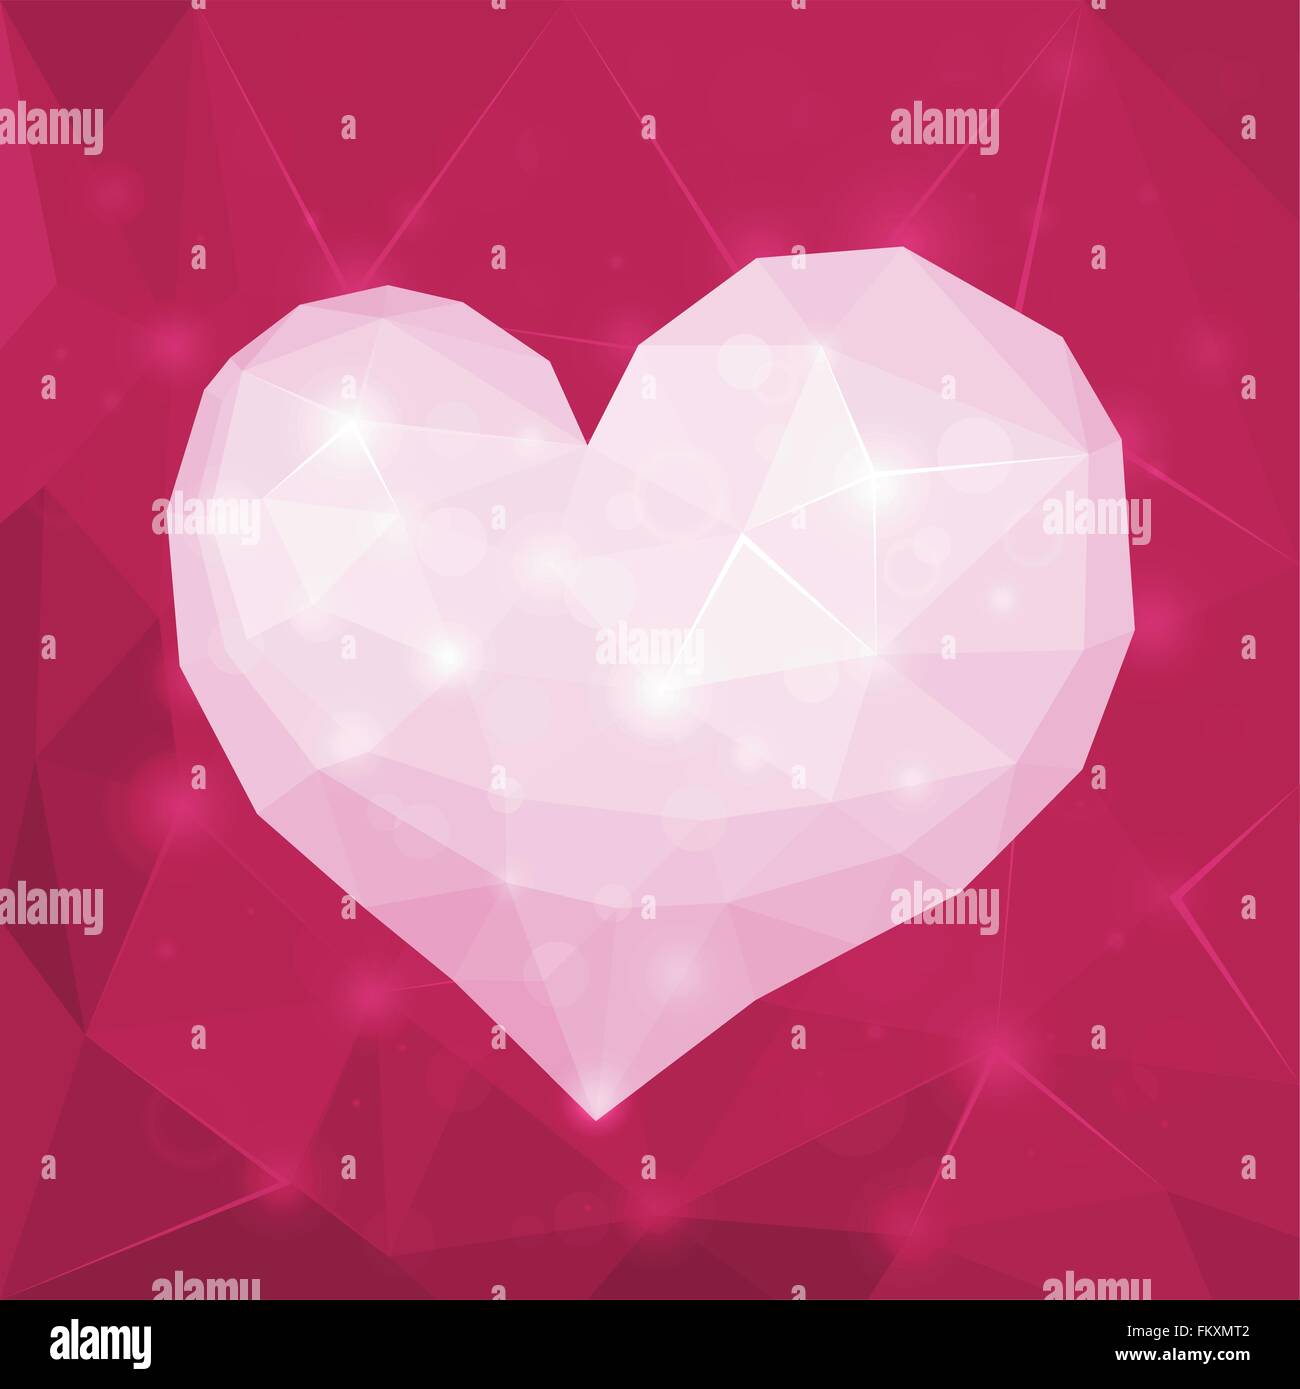 Wunderschönen Valentinstag Design Abstrakt polygonales geometrische glänzendes weißes Herz auf violettem Hintergrund Stock Vektor